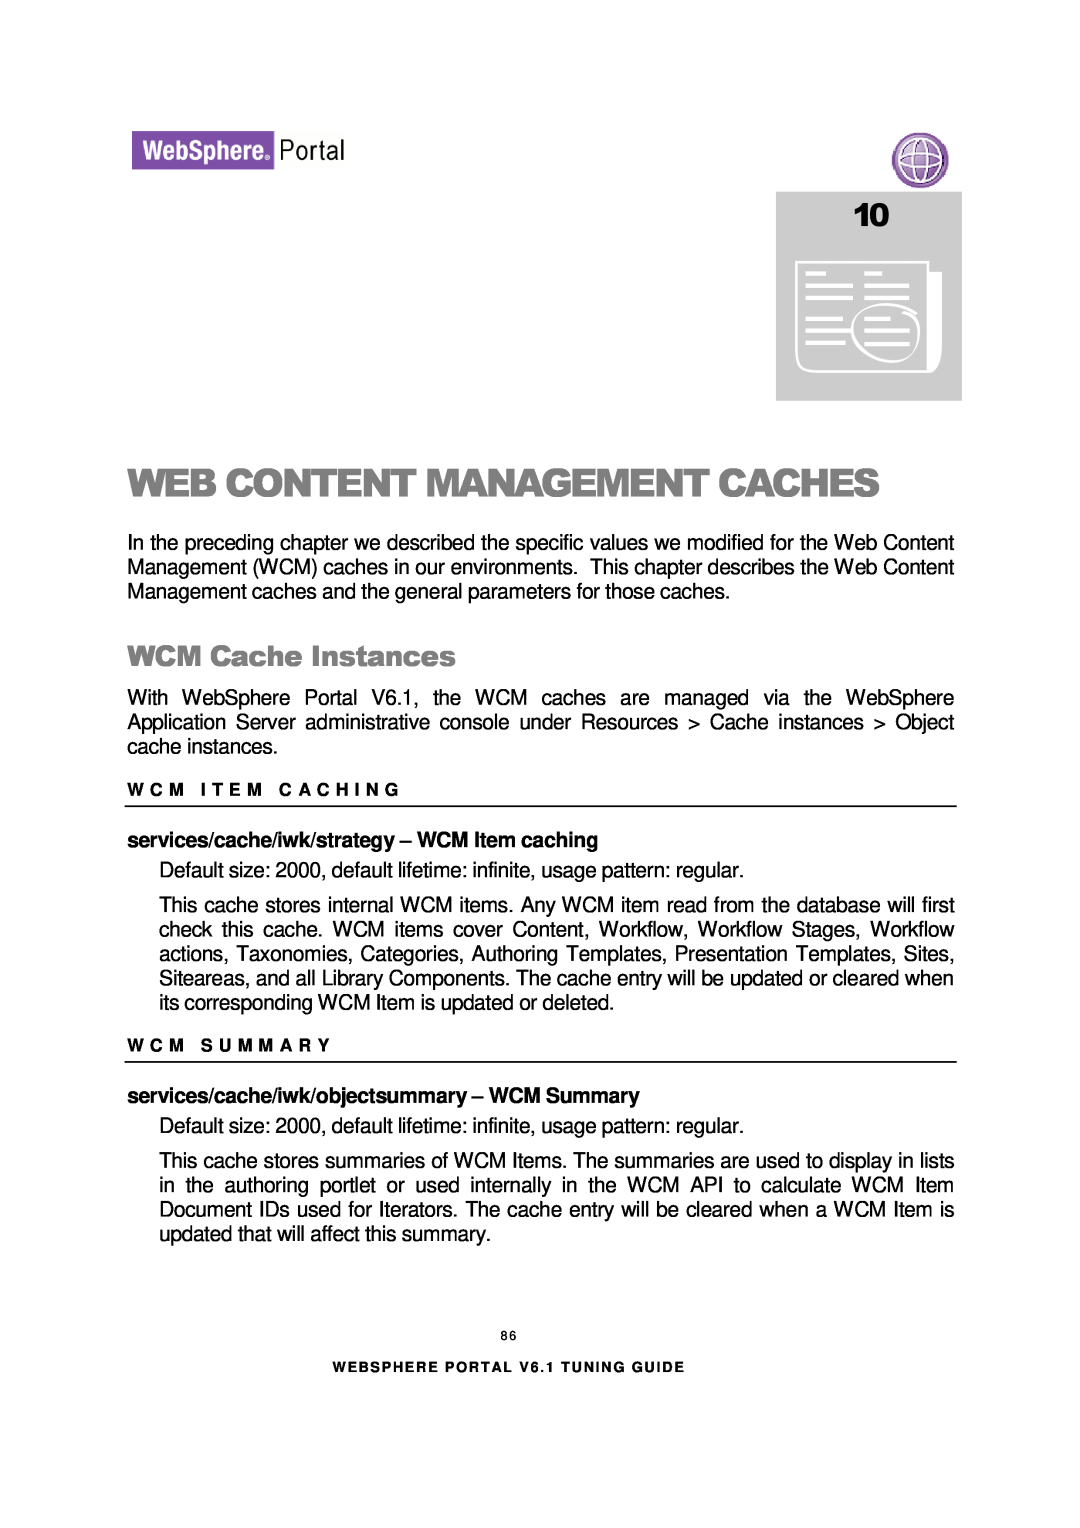 IBM 6.1.X manual Web Content Management Caches, WCM Cache Instances, services/cache/iwk/strategy - WCM Item caching 